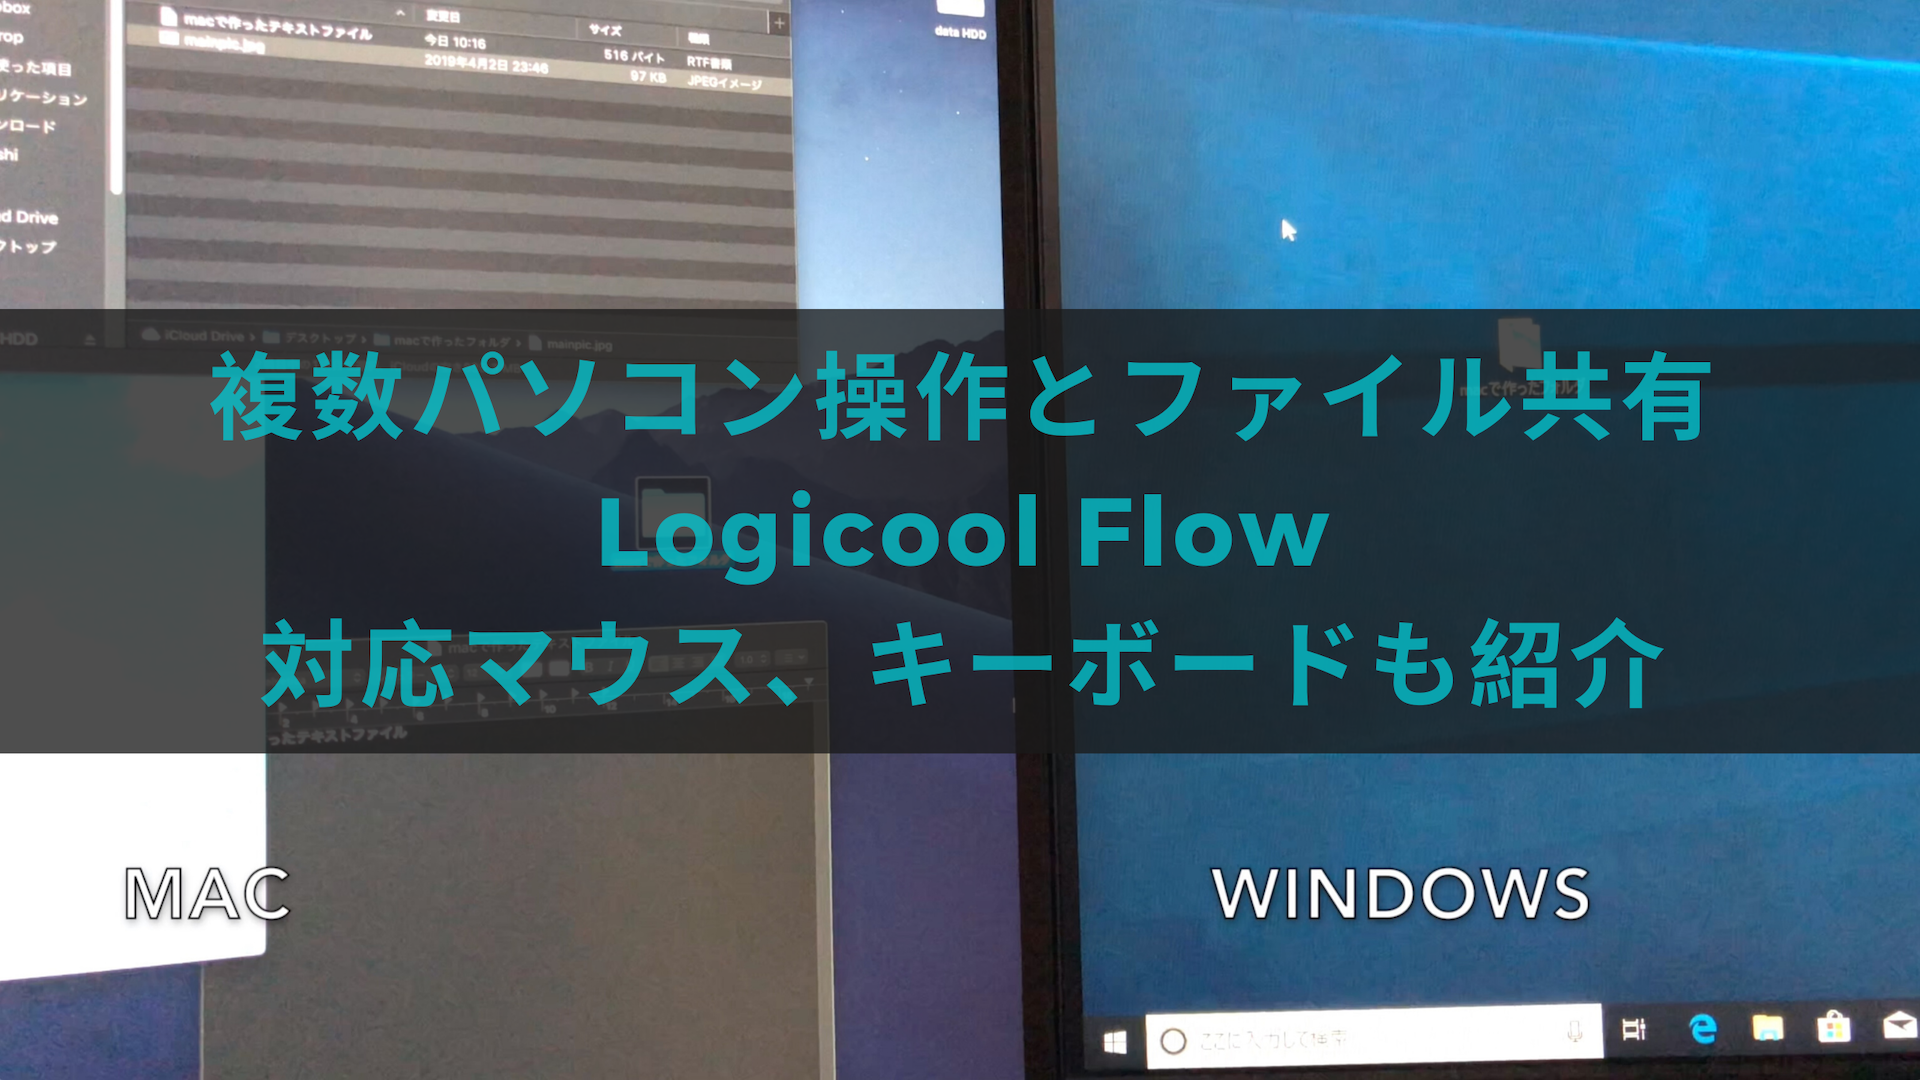 複数パソコンの操作とファイル共有 Logicool Flow対応マウスとキーボードも紹介 Devicenavi デバイスナビ